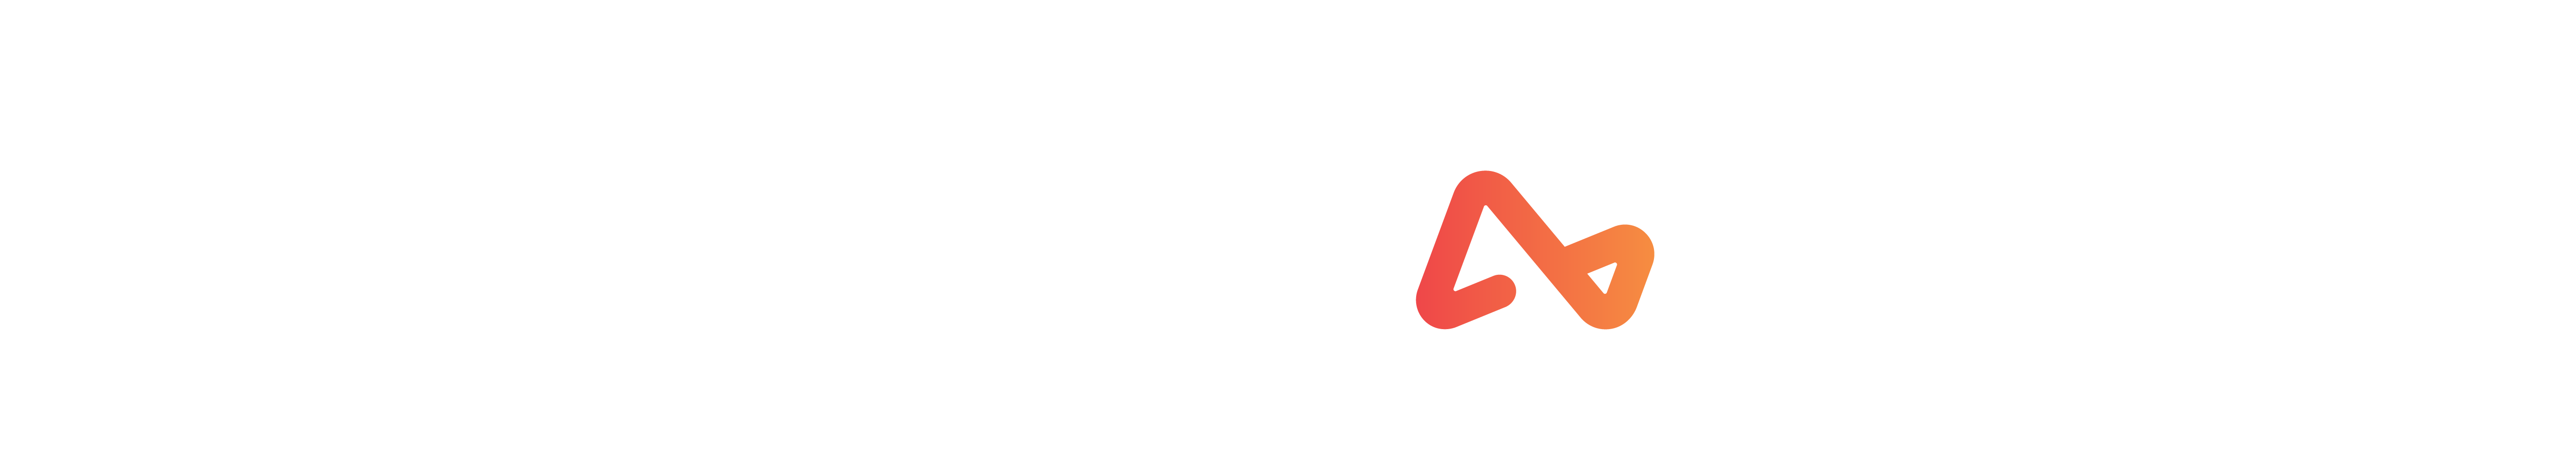 Airwallex logo white (2)